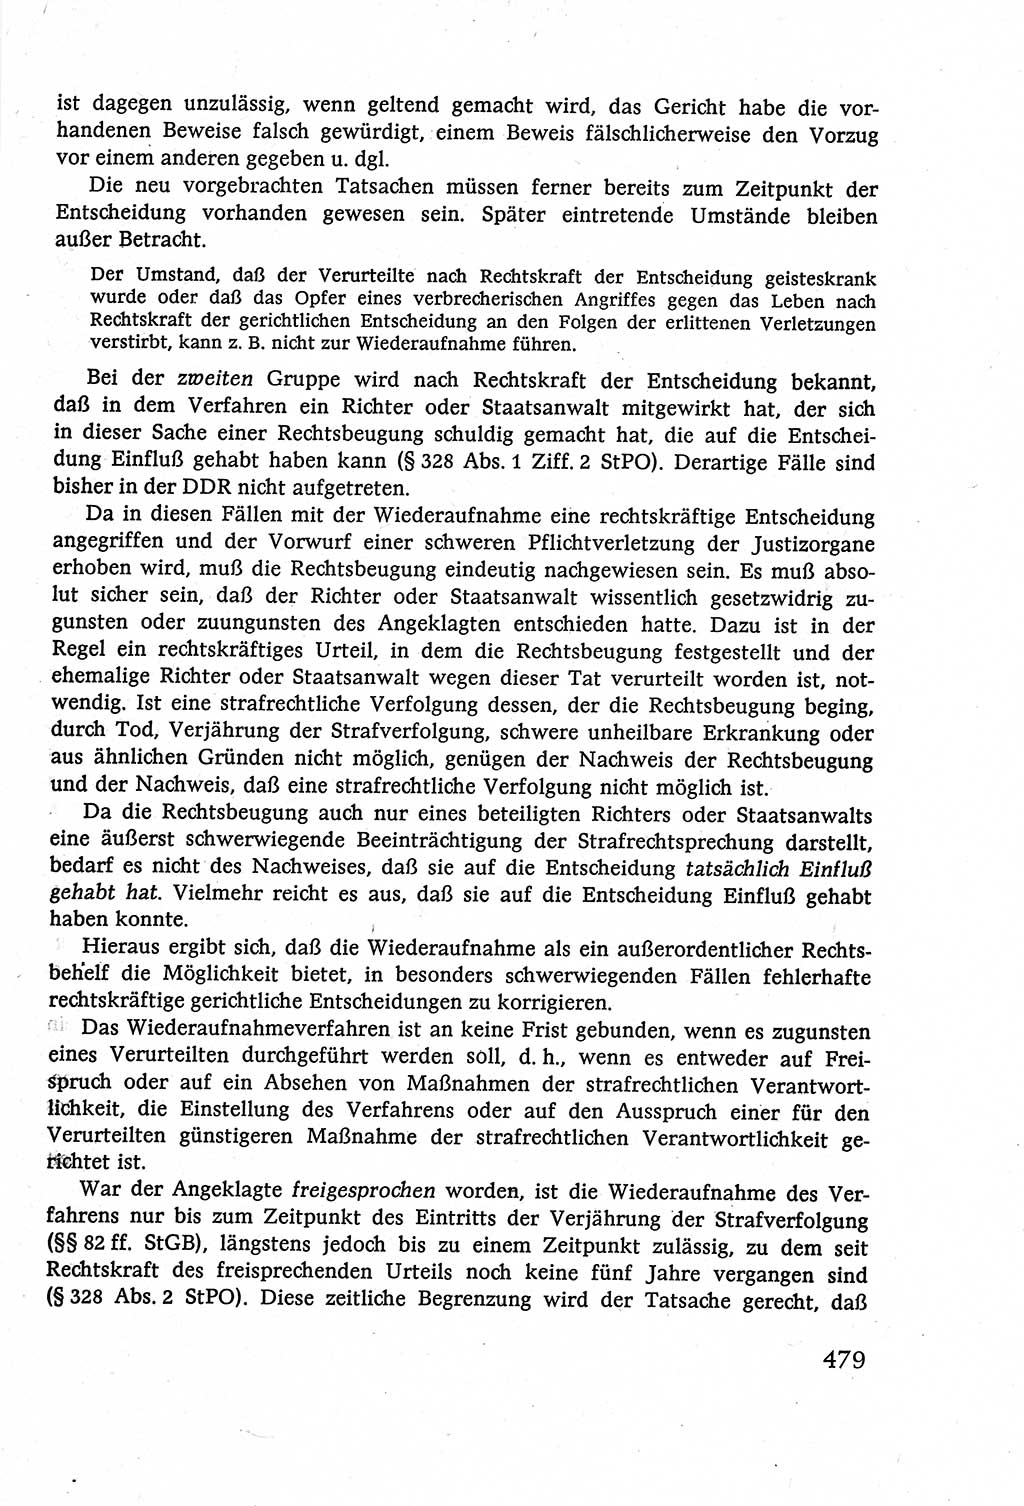 Strafverfahrensrecht [Deutsche Demokratische Republik (DDR)], Lehrbuch 1977, Seite 479 (Strafverf.-R. DDR Lb. 1977, S. 479)